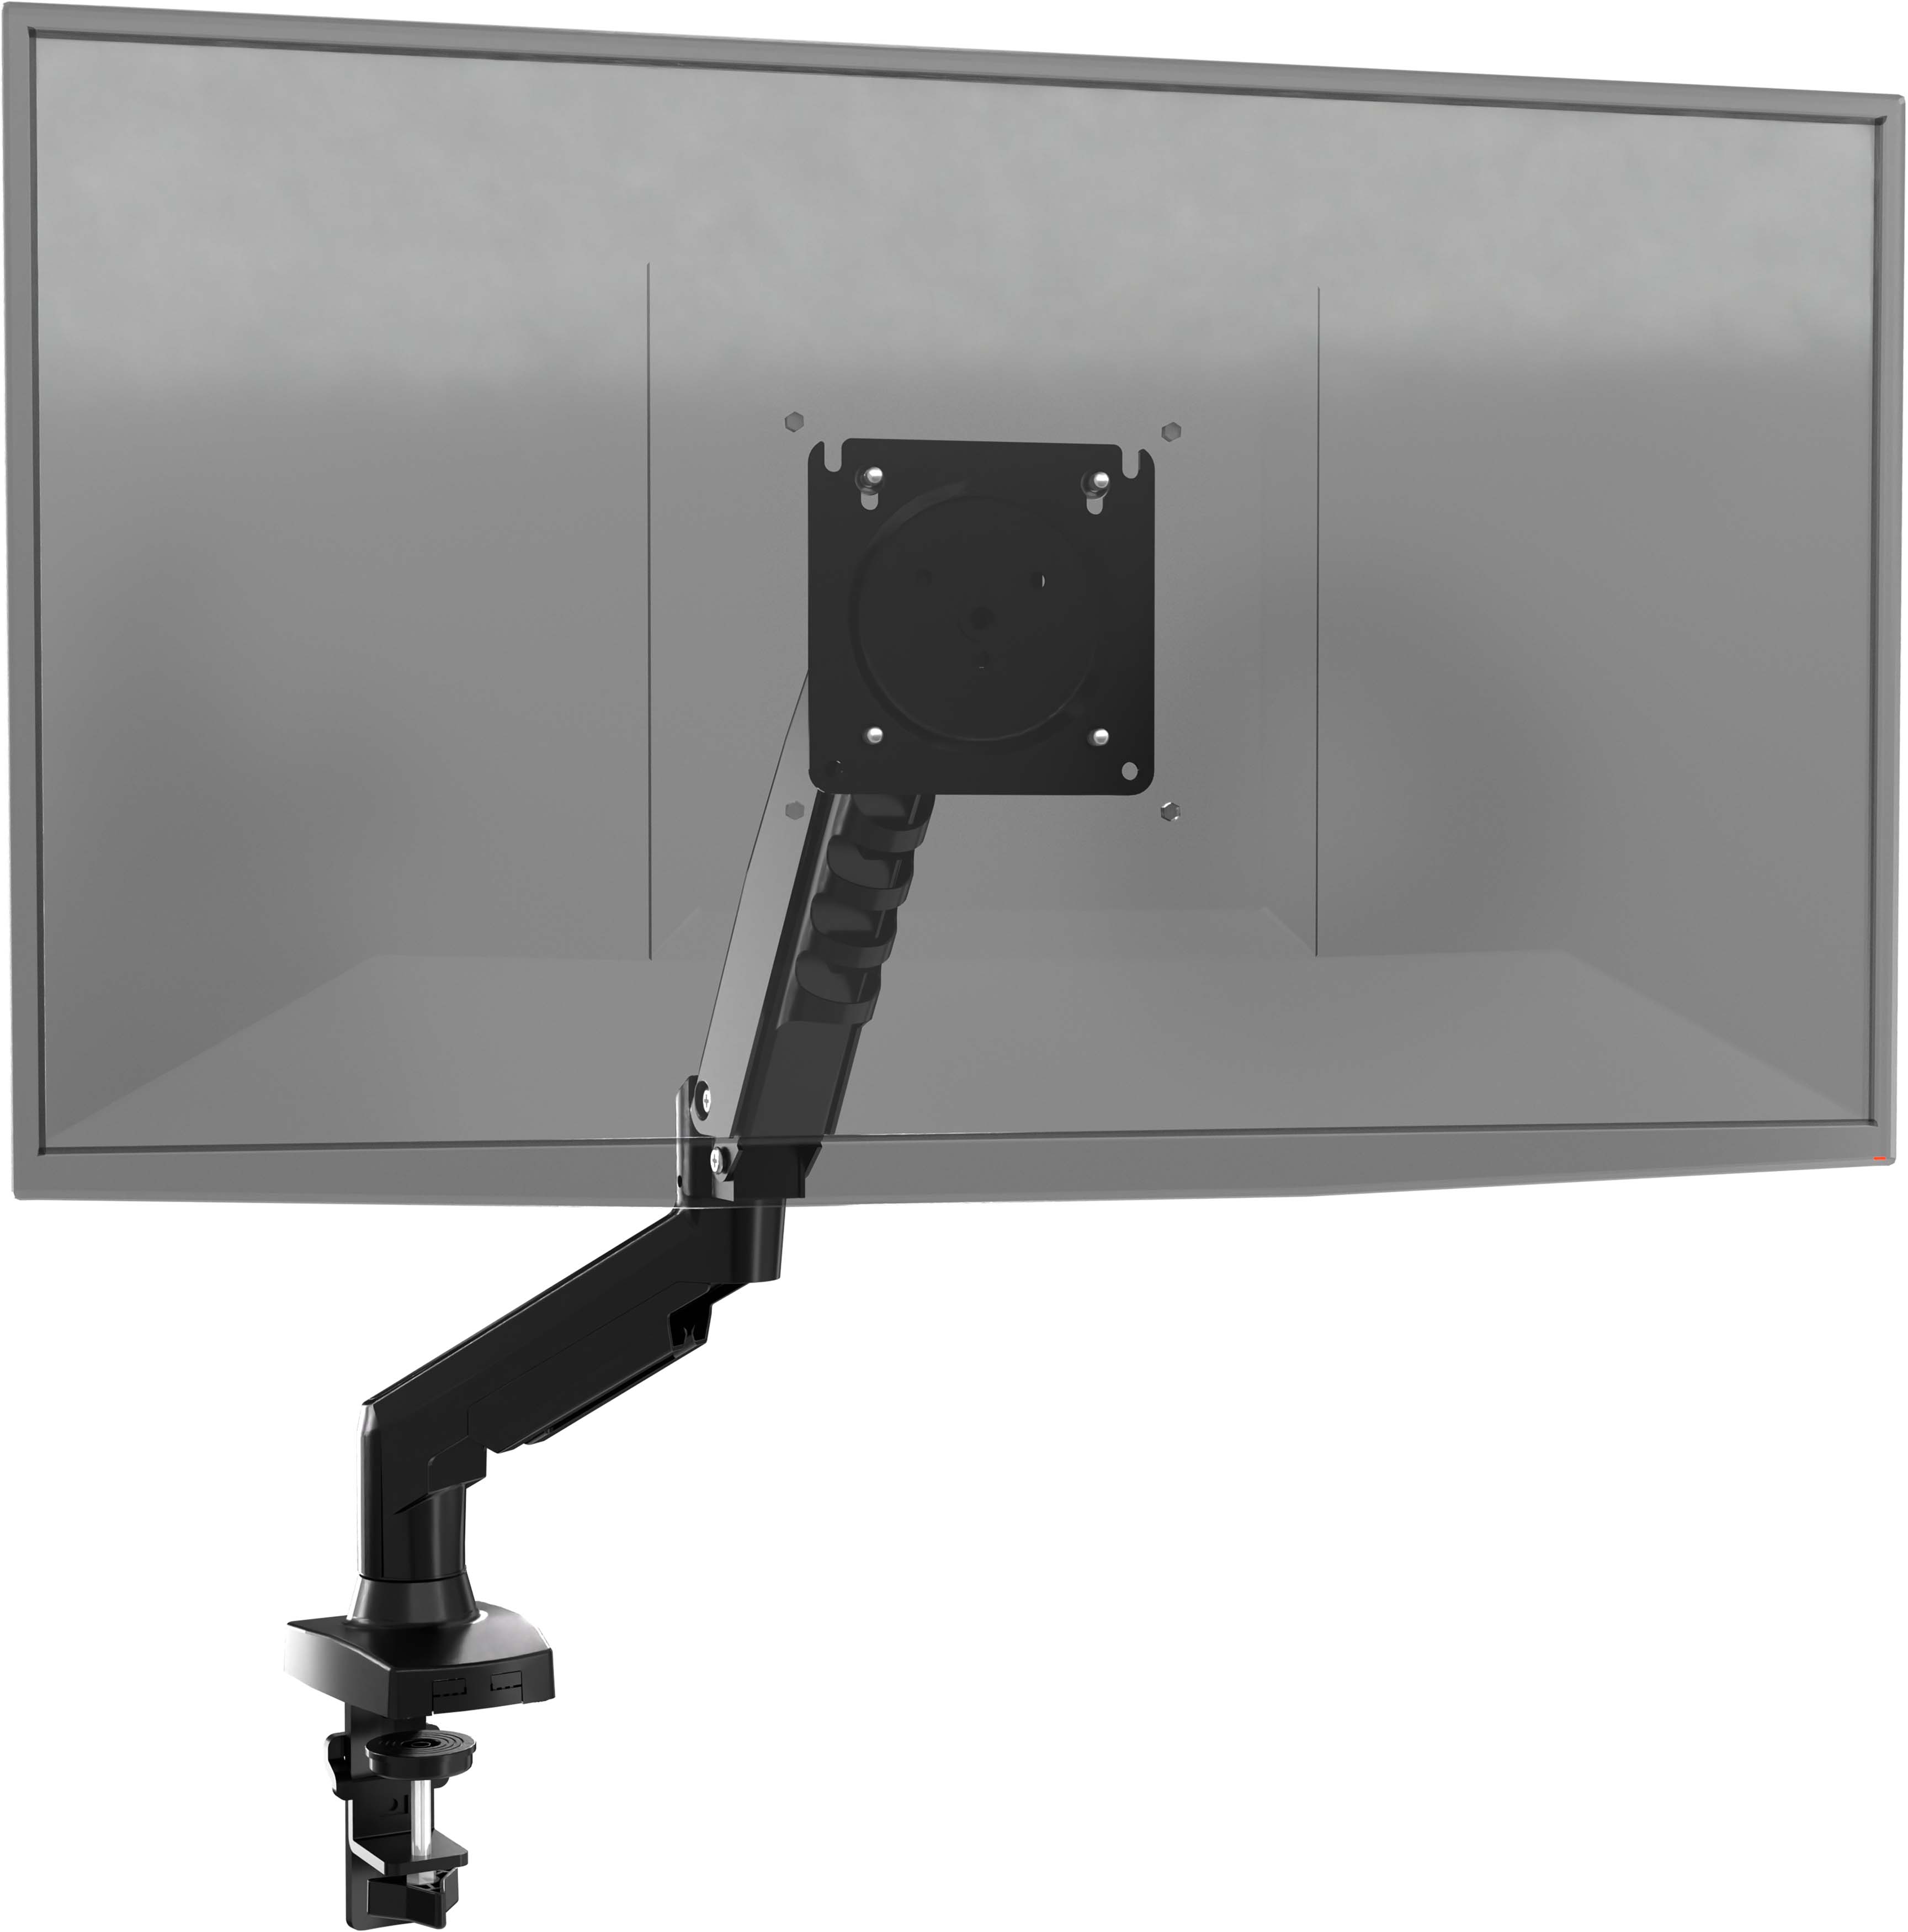 Gasfeder-Monitorarm für Tisch (für 17-30 Zoll Bildschirm bis 9kg)